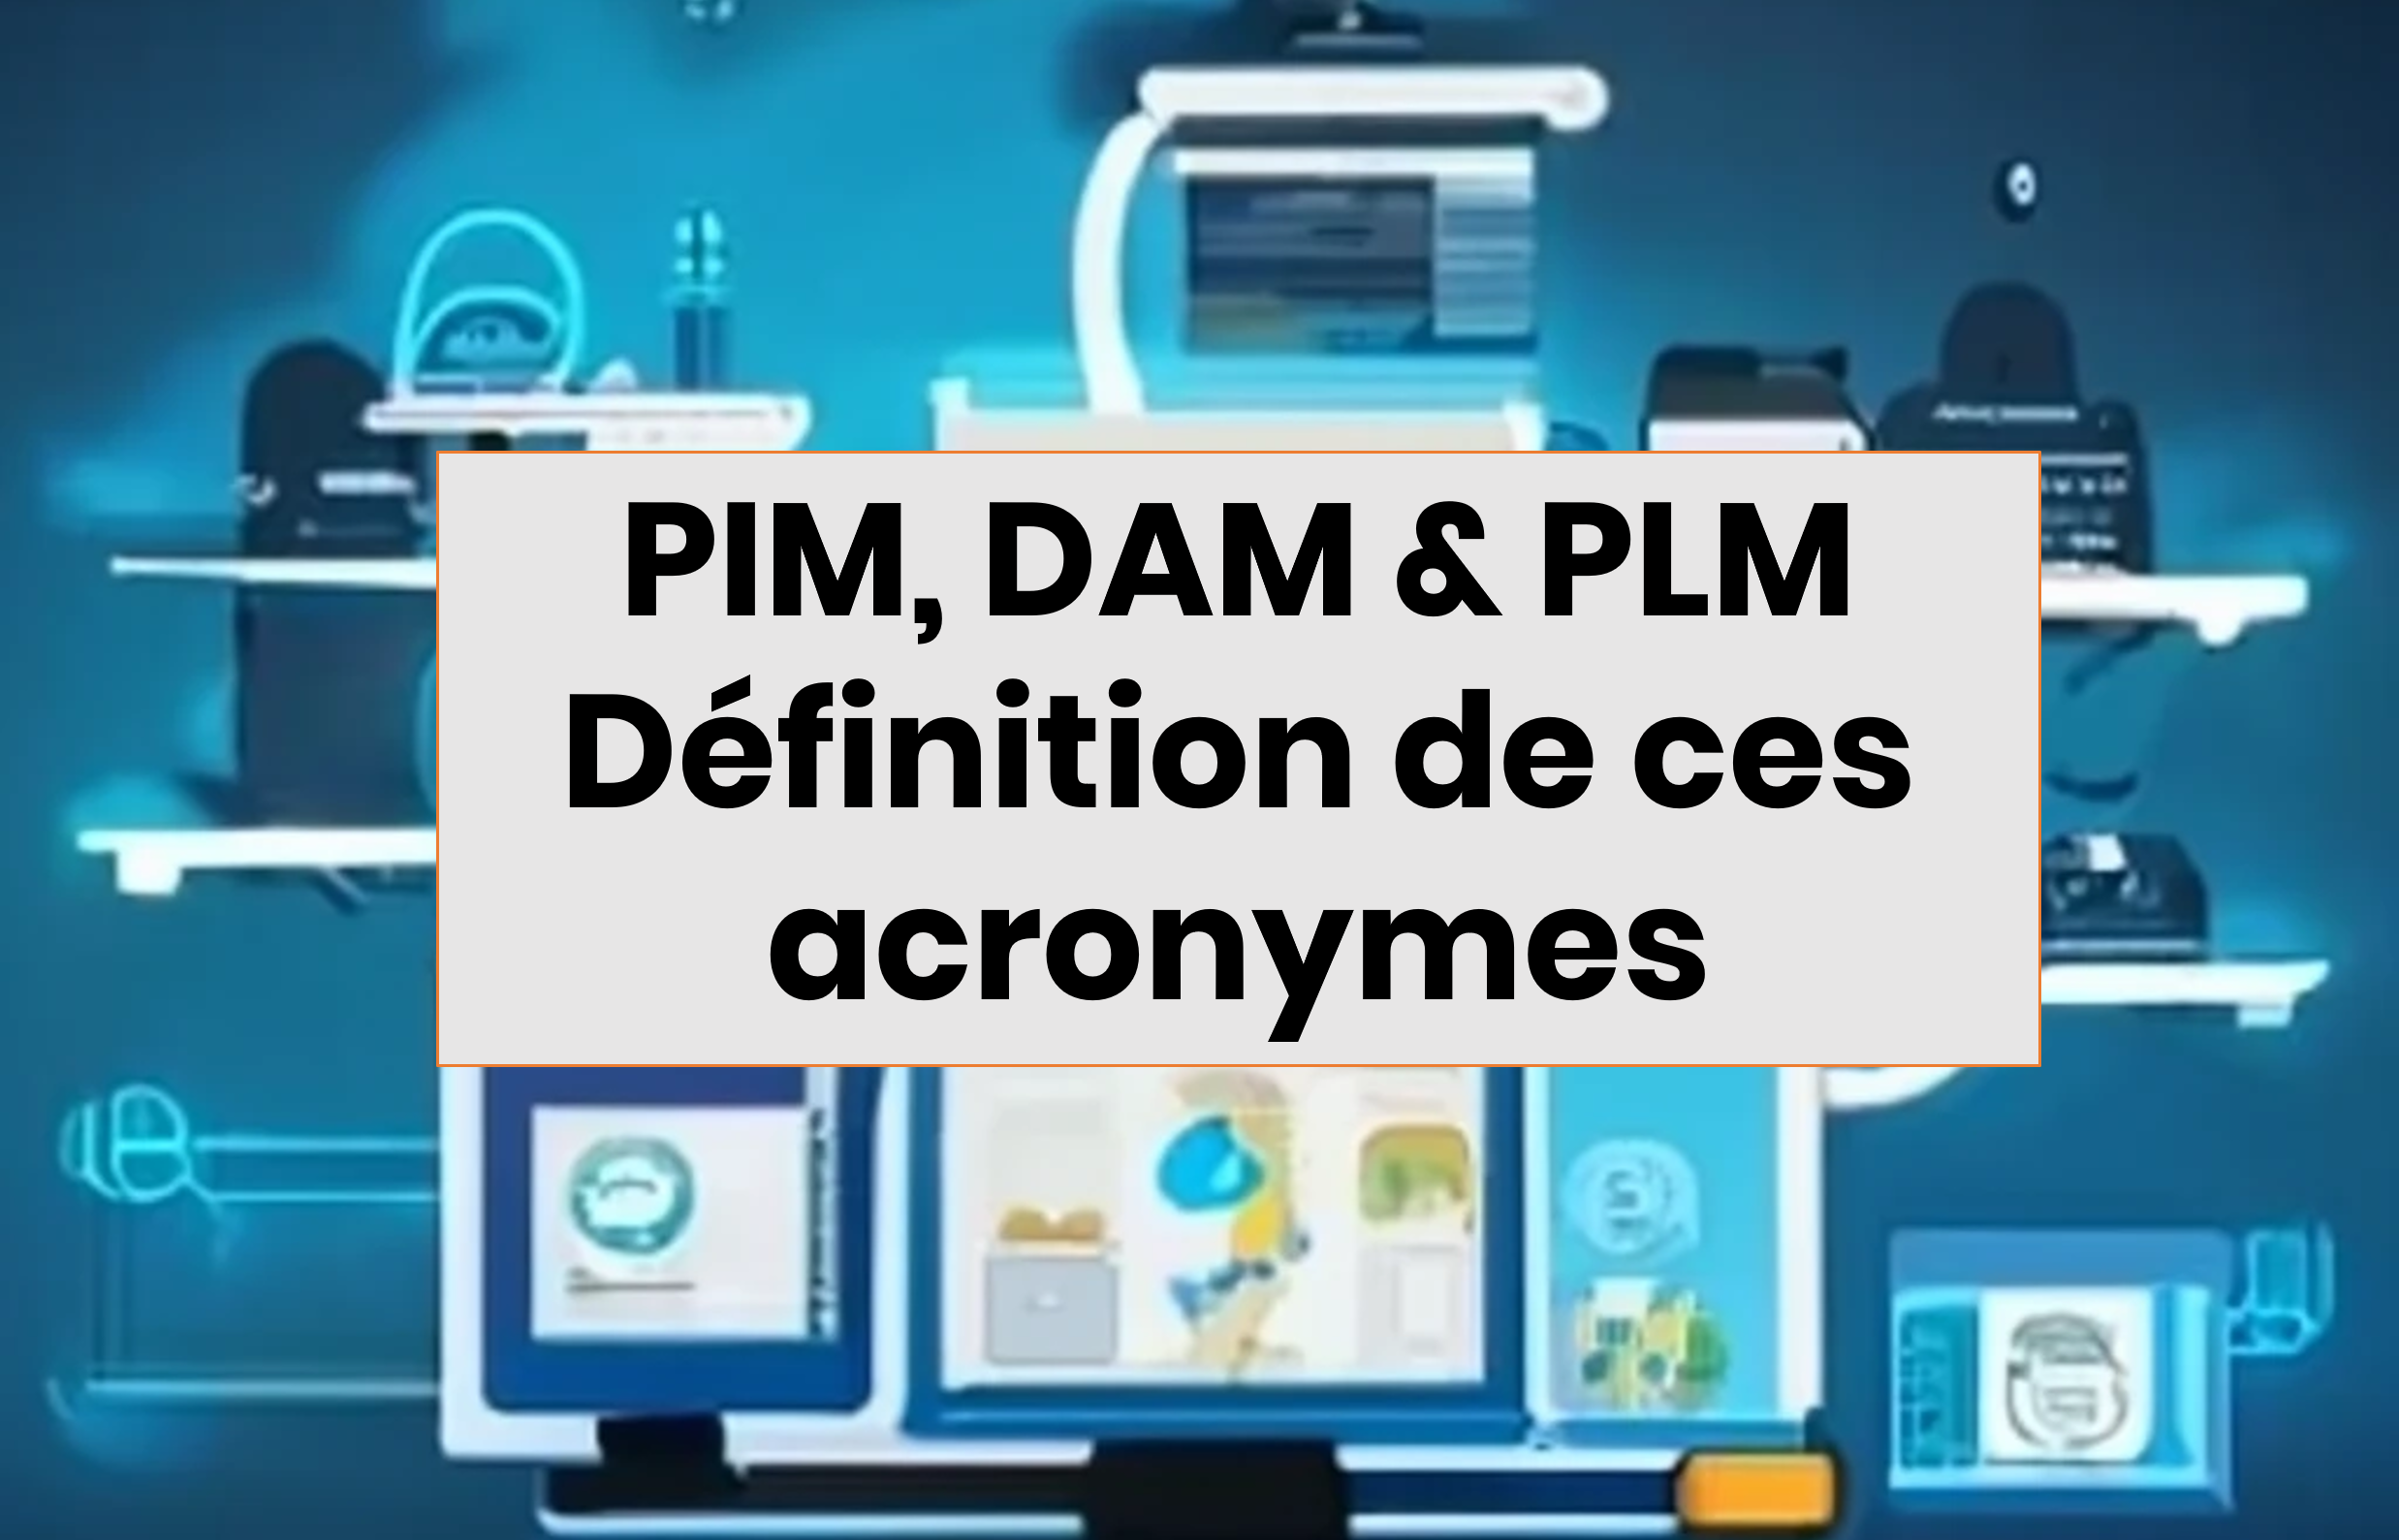 Infographie de plusieurs sites web interconnectés présentant des PIM DAM et PLM, des solutions numériques très utilisées dans l'e-commerce pour améliorer la performance et les ventes